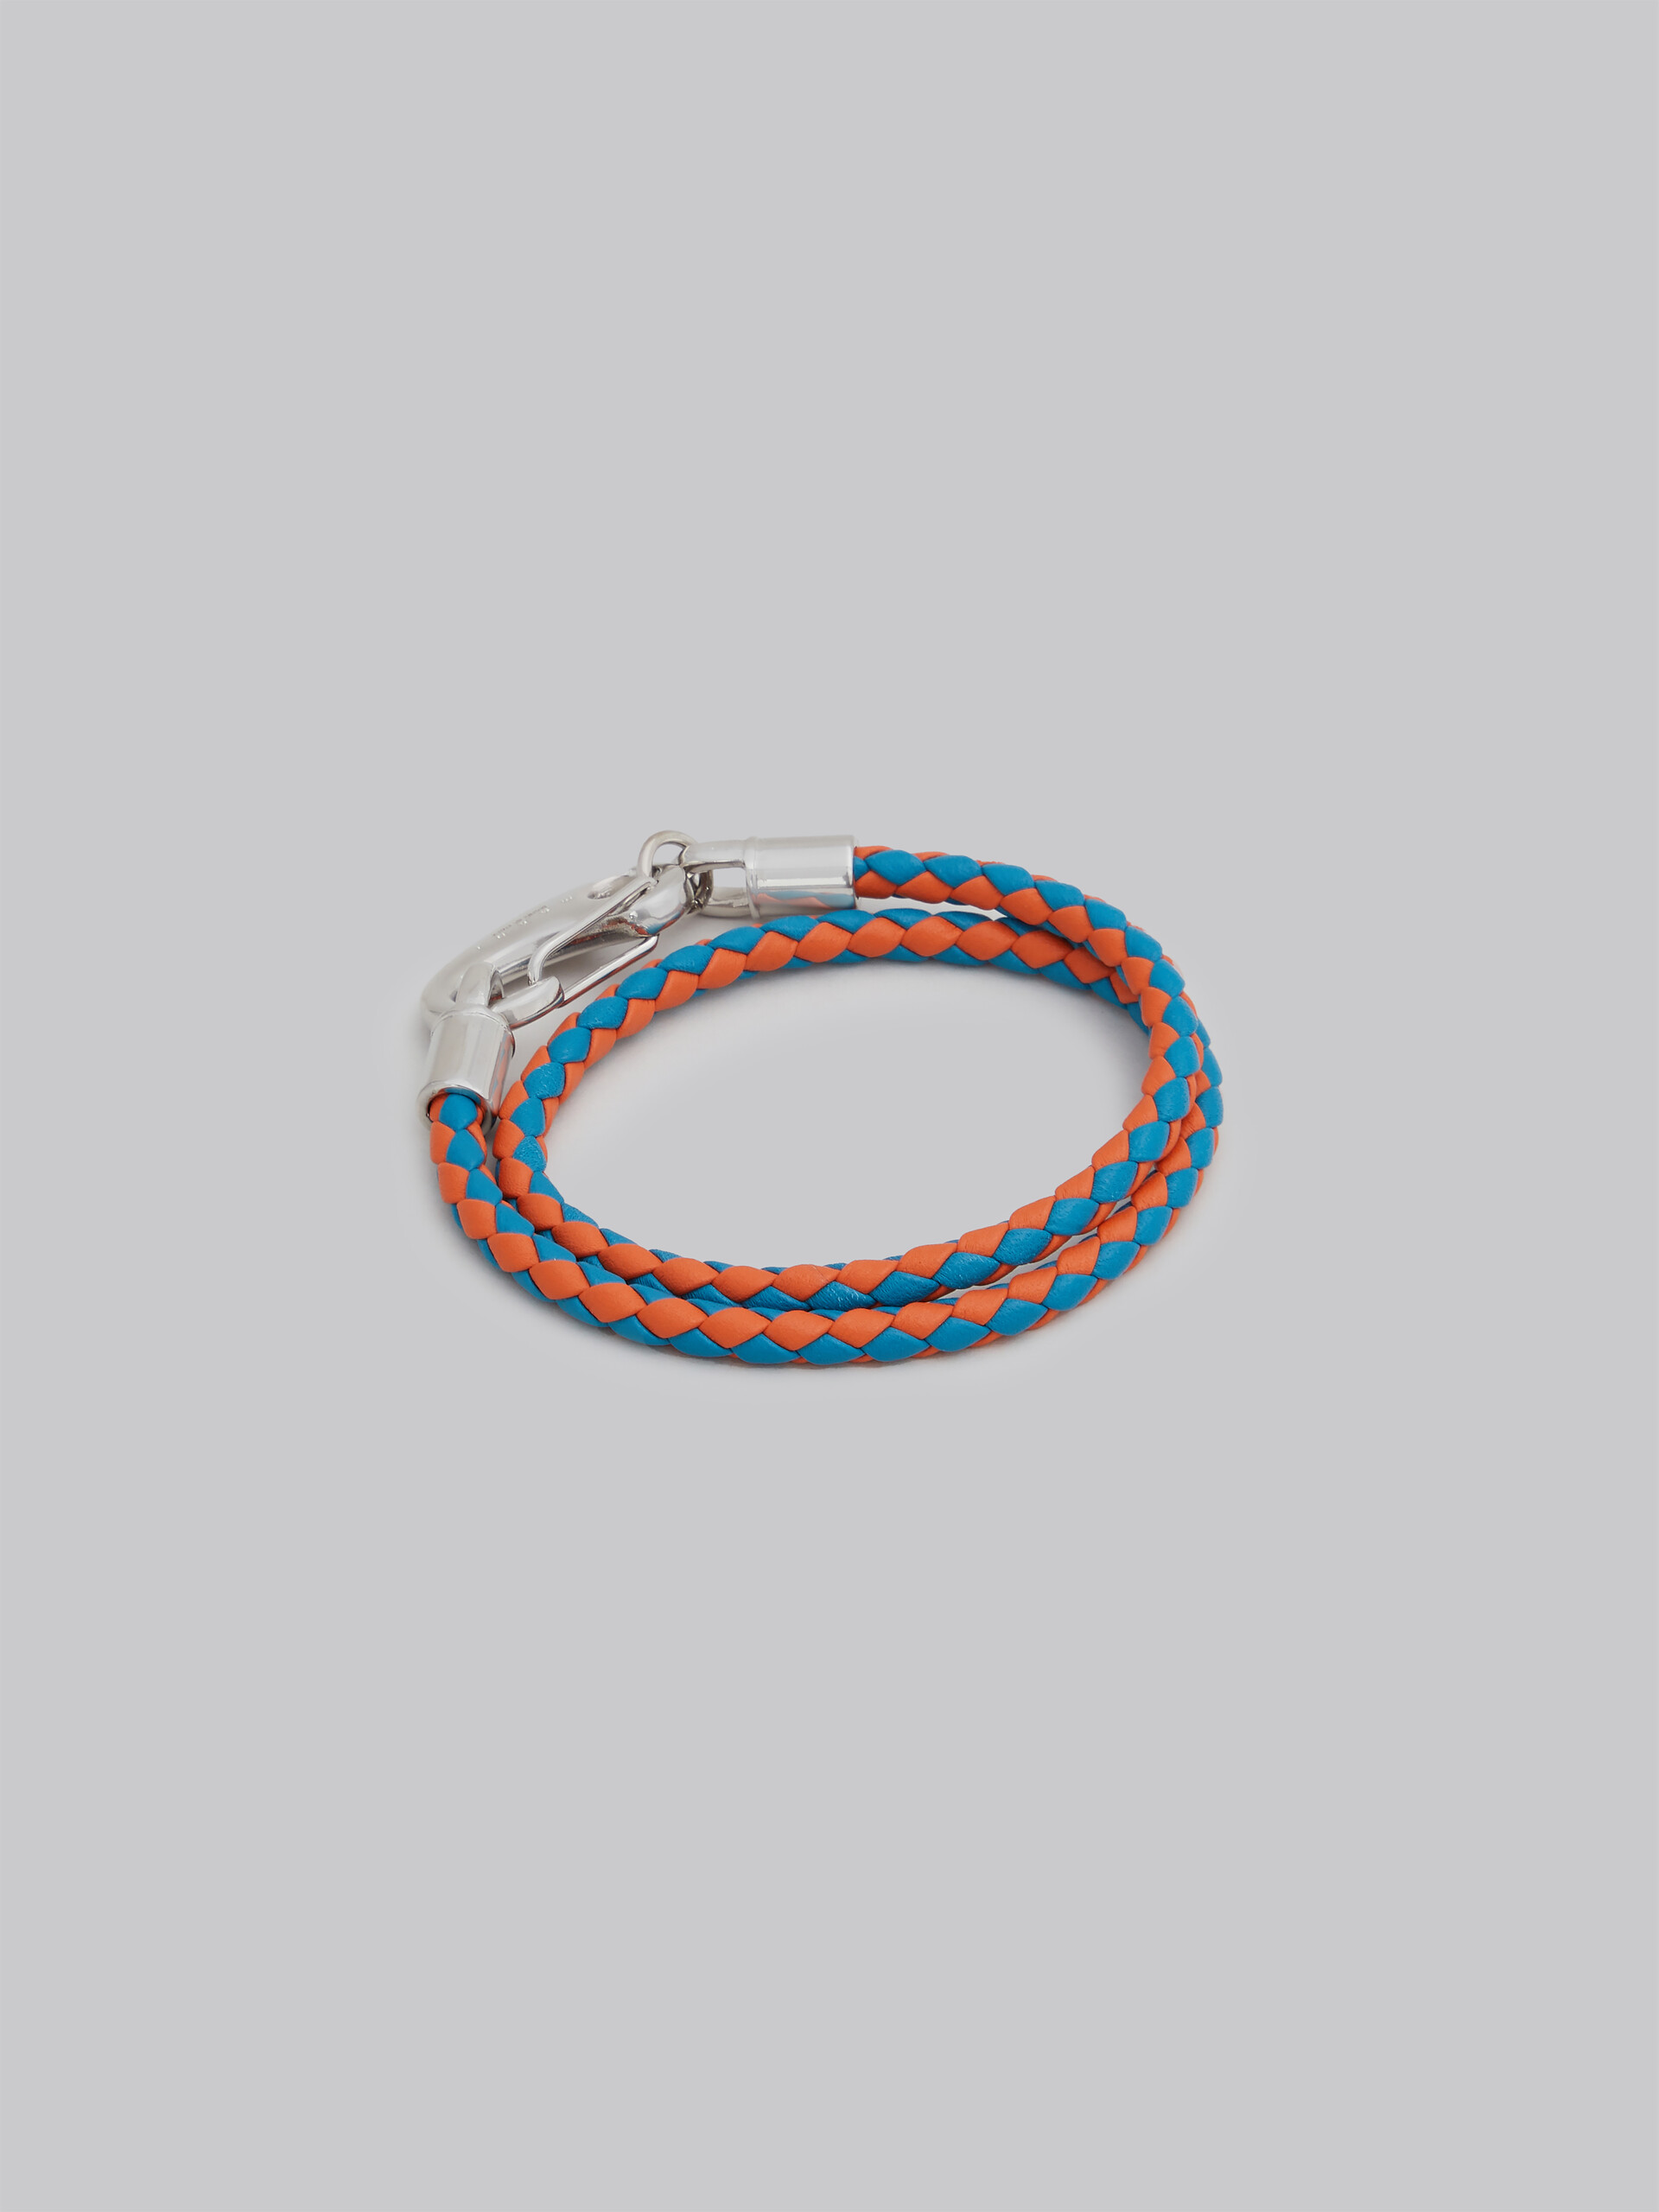 Turquoise and orange woven leather bracelet - Bracelets - Image 3